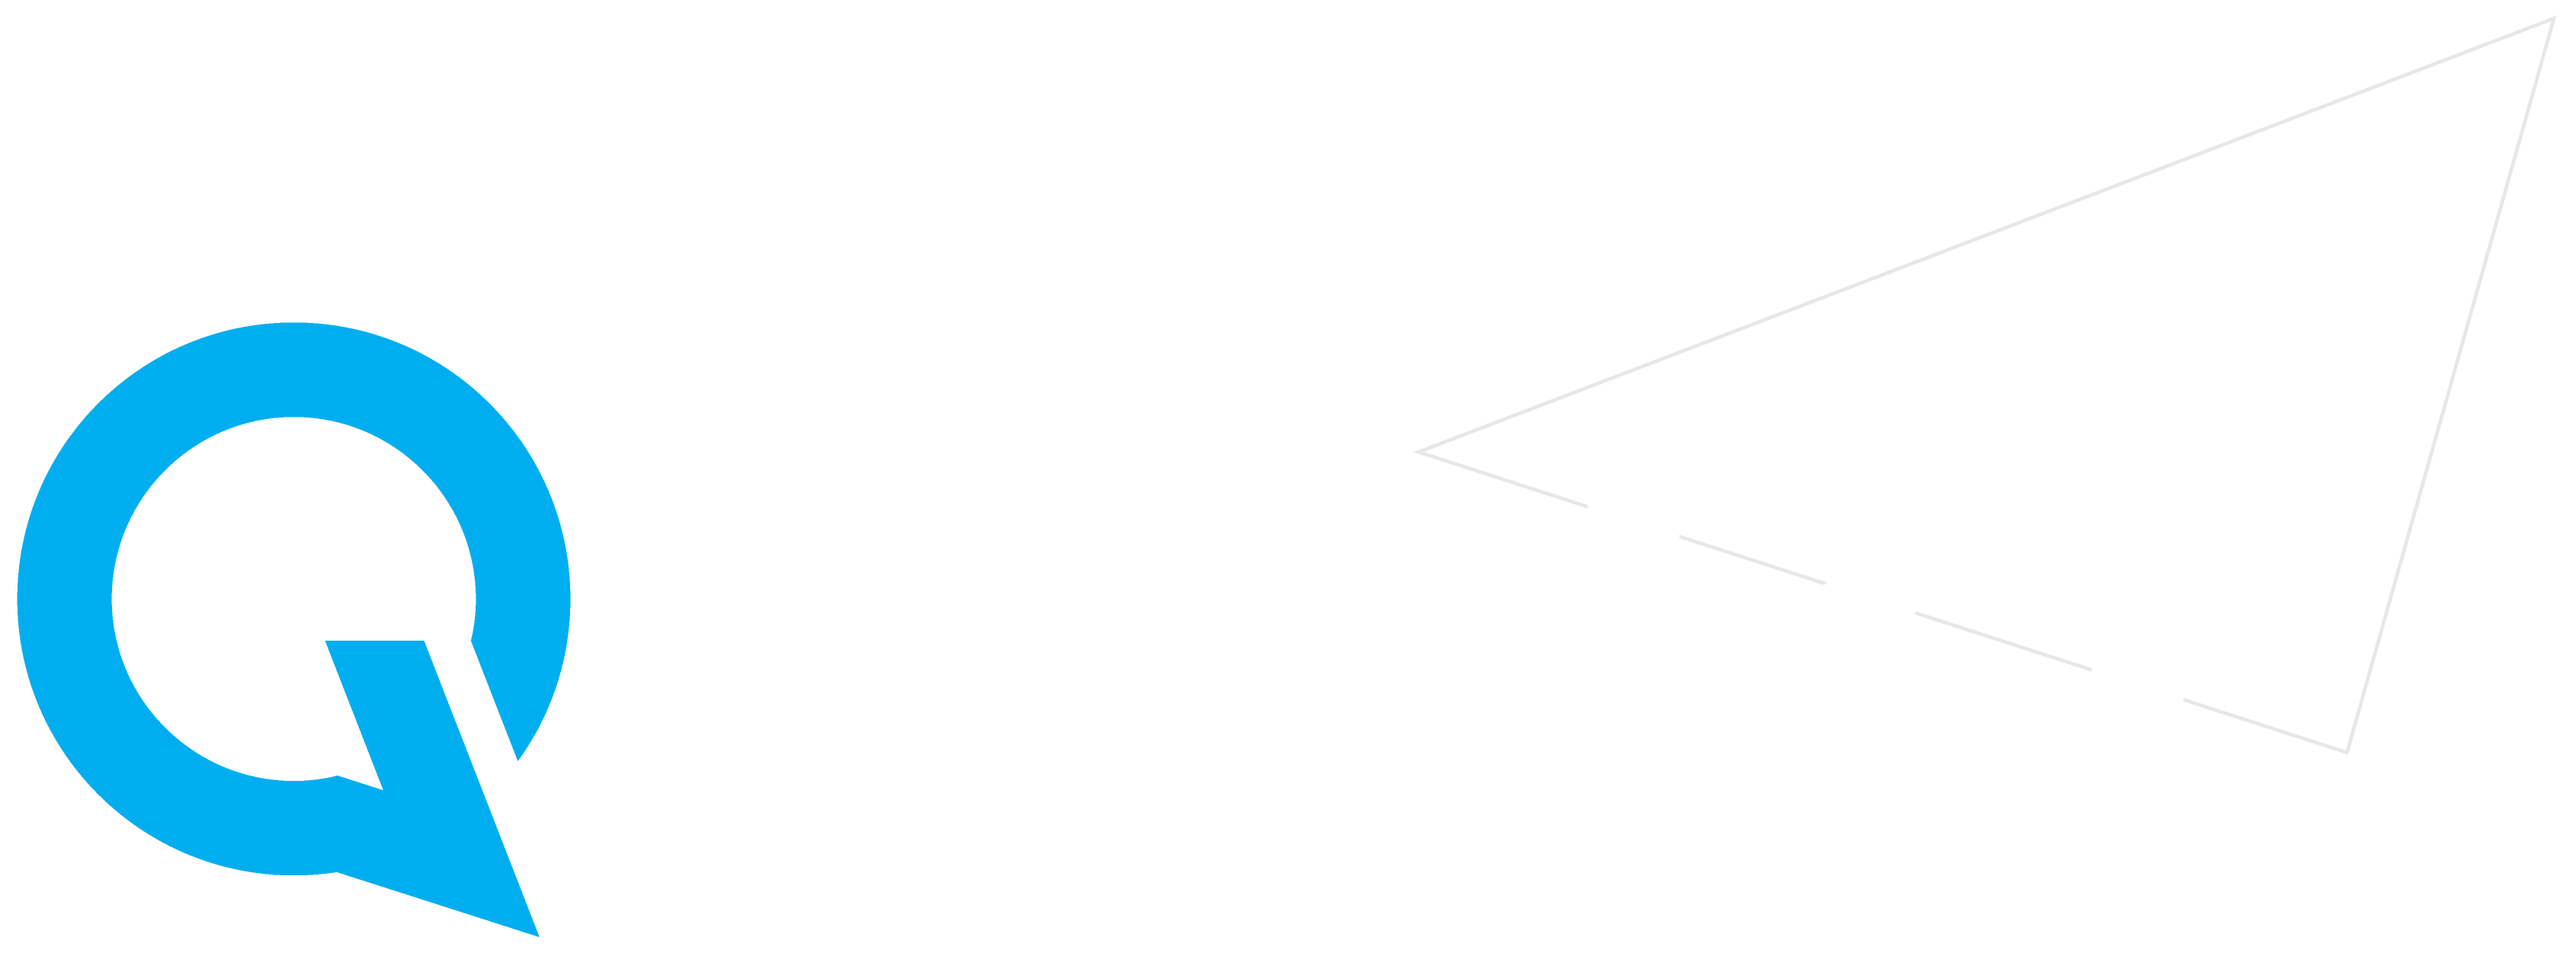 Q Mart Logo - Qmart. SA's Leading distributor